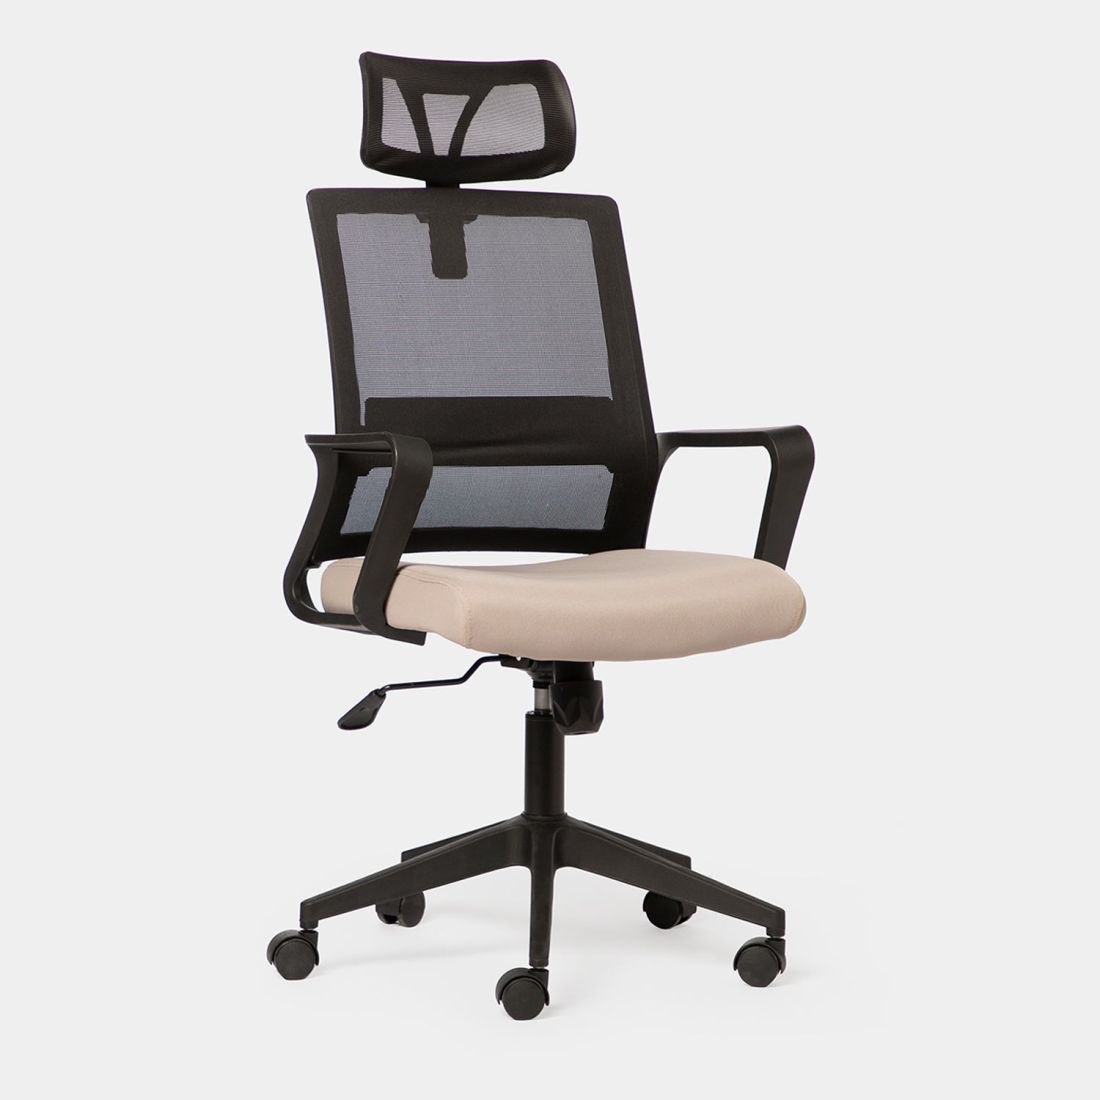 Con la silla de escritorio Leima en negro y beige conseguirás crear un espacio de trabajo cómodo y saludable. Se trata de una silla ergonómica que te permitirá trabajar cómodamente durante muchas horas. Cuenta con refuerzo lumbar